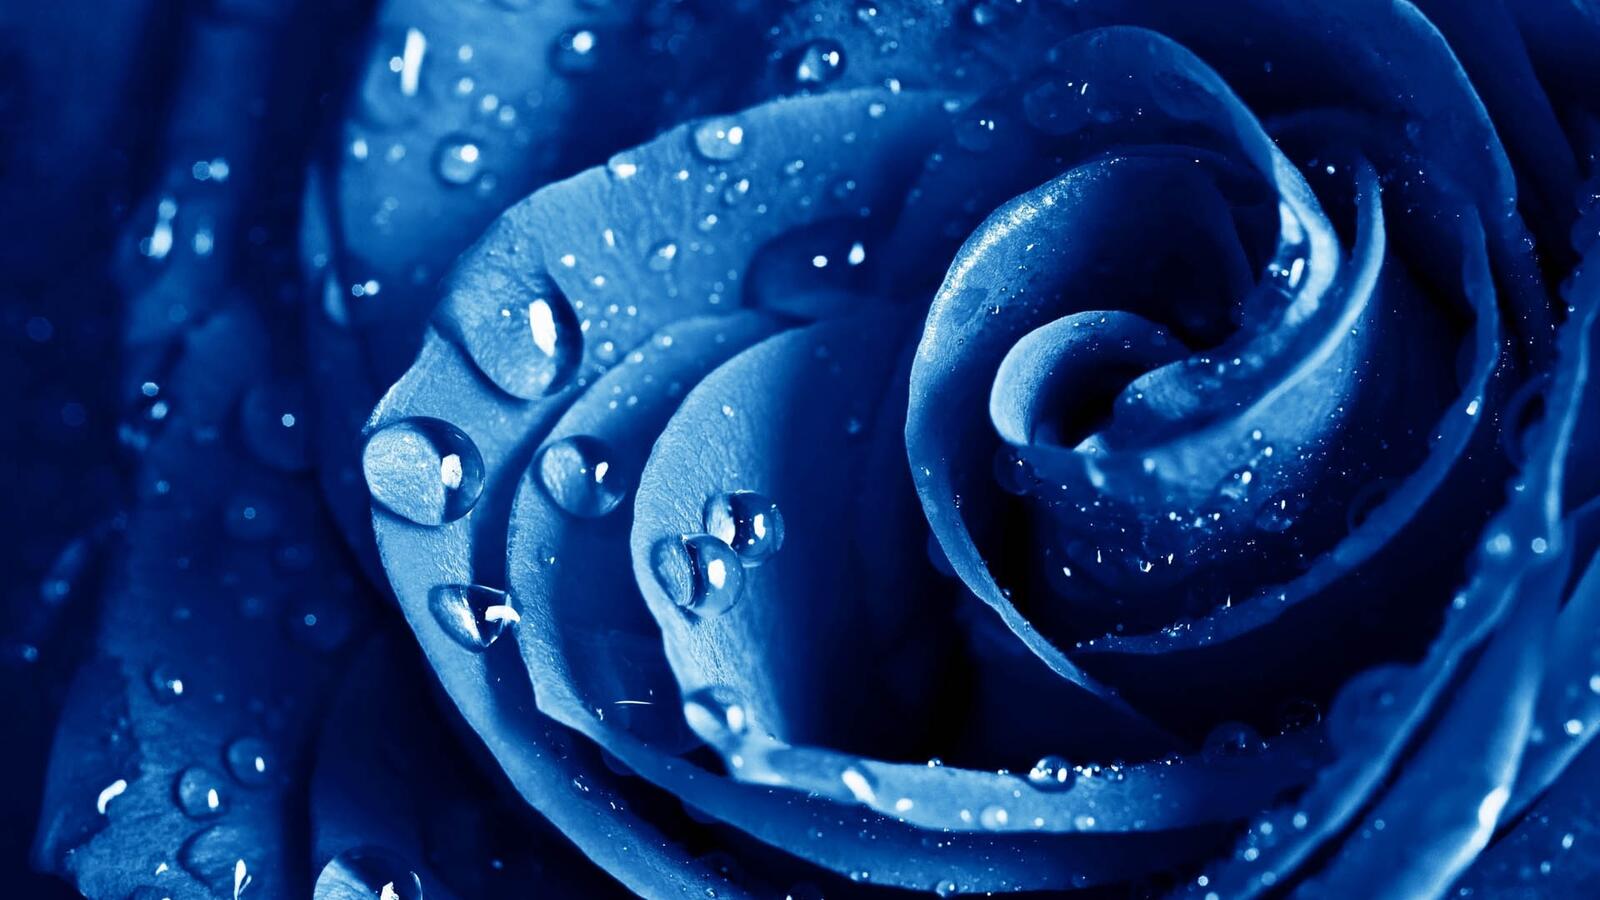 Бесплатное фото Роза синего цвета с каплями дождя